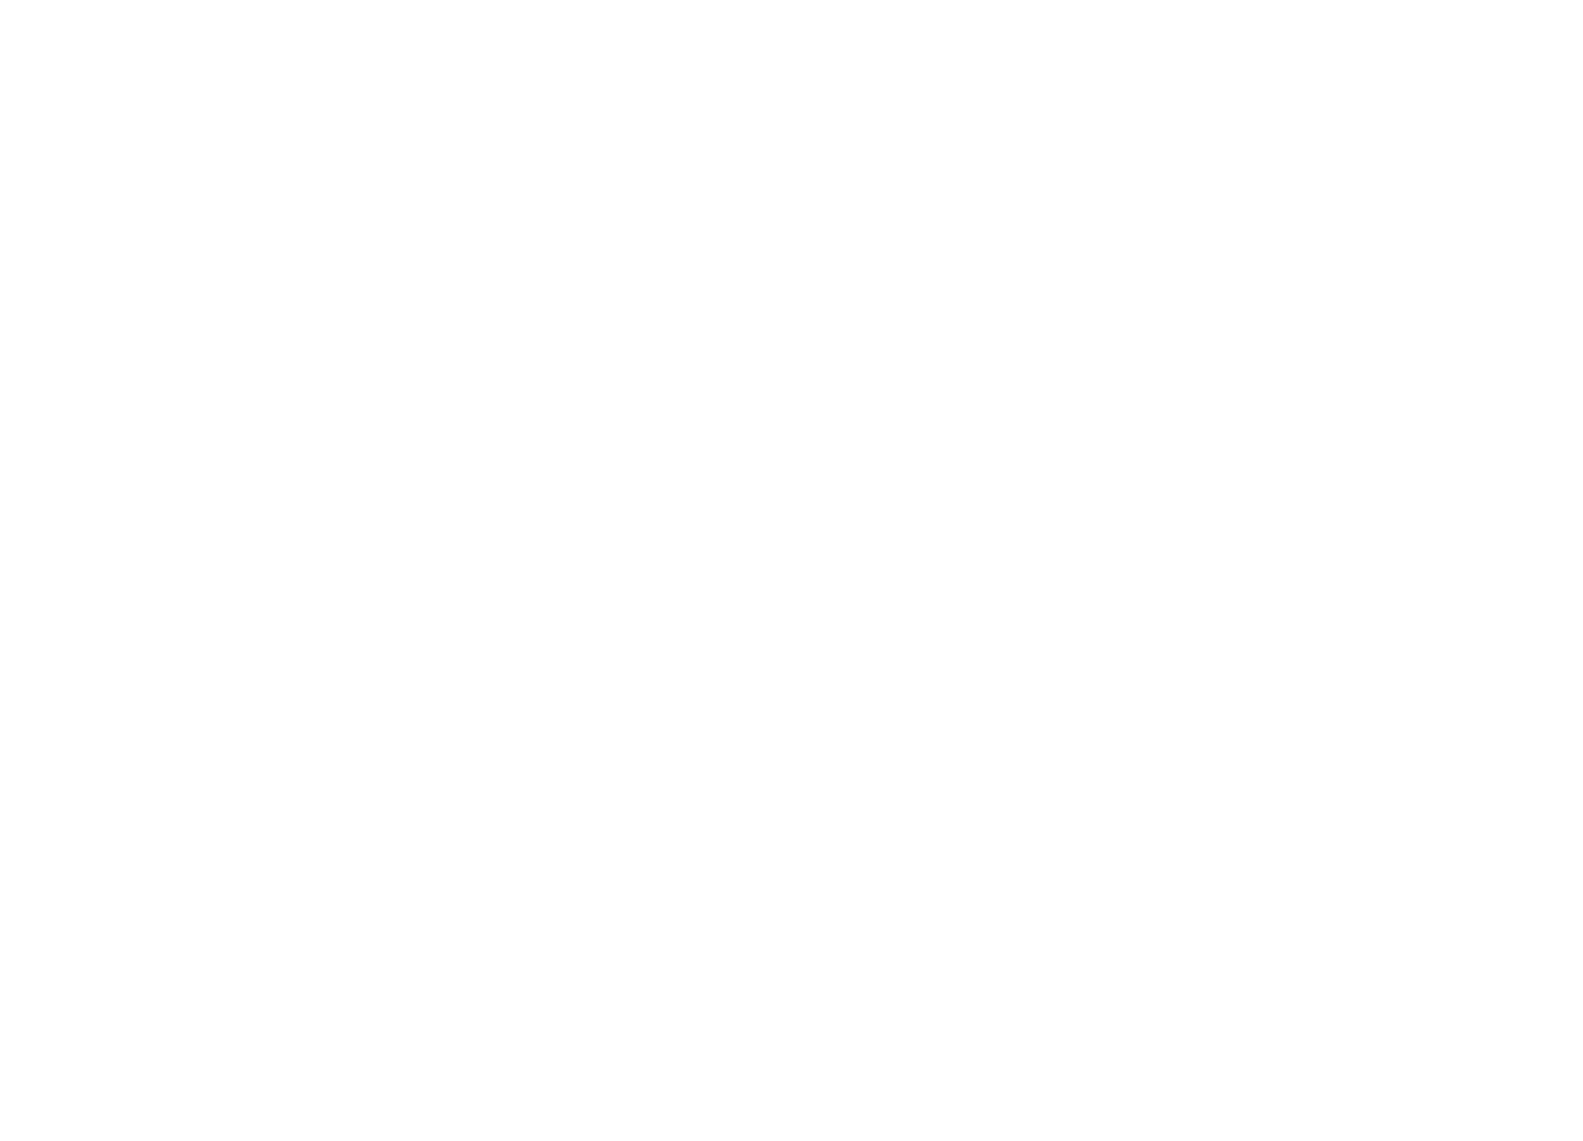 Getlink logo large for dark backgrounds (transparent PNG)